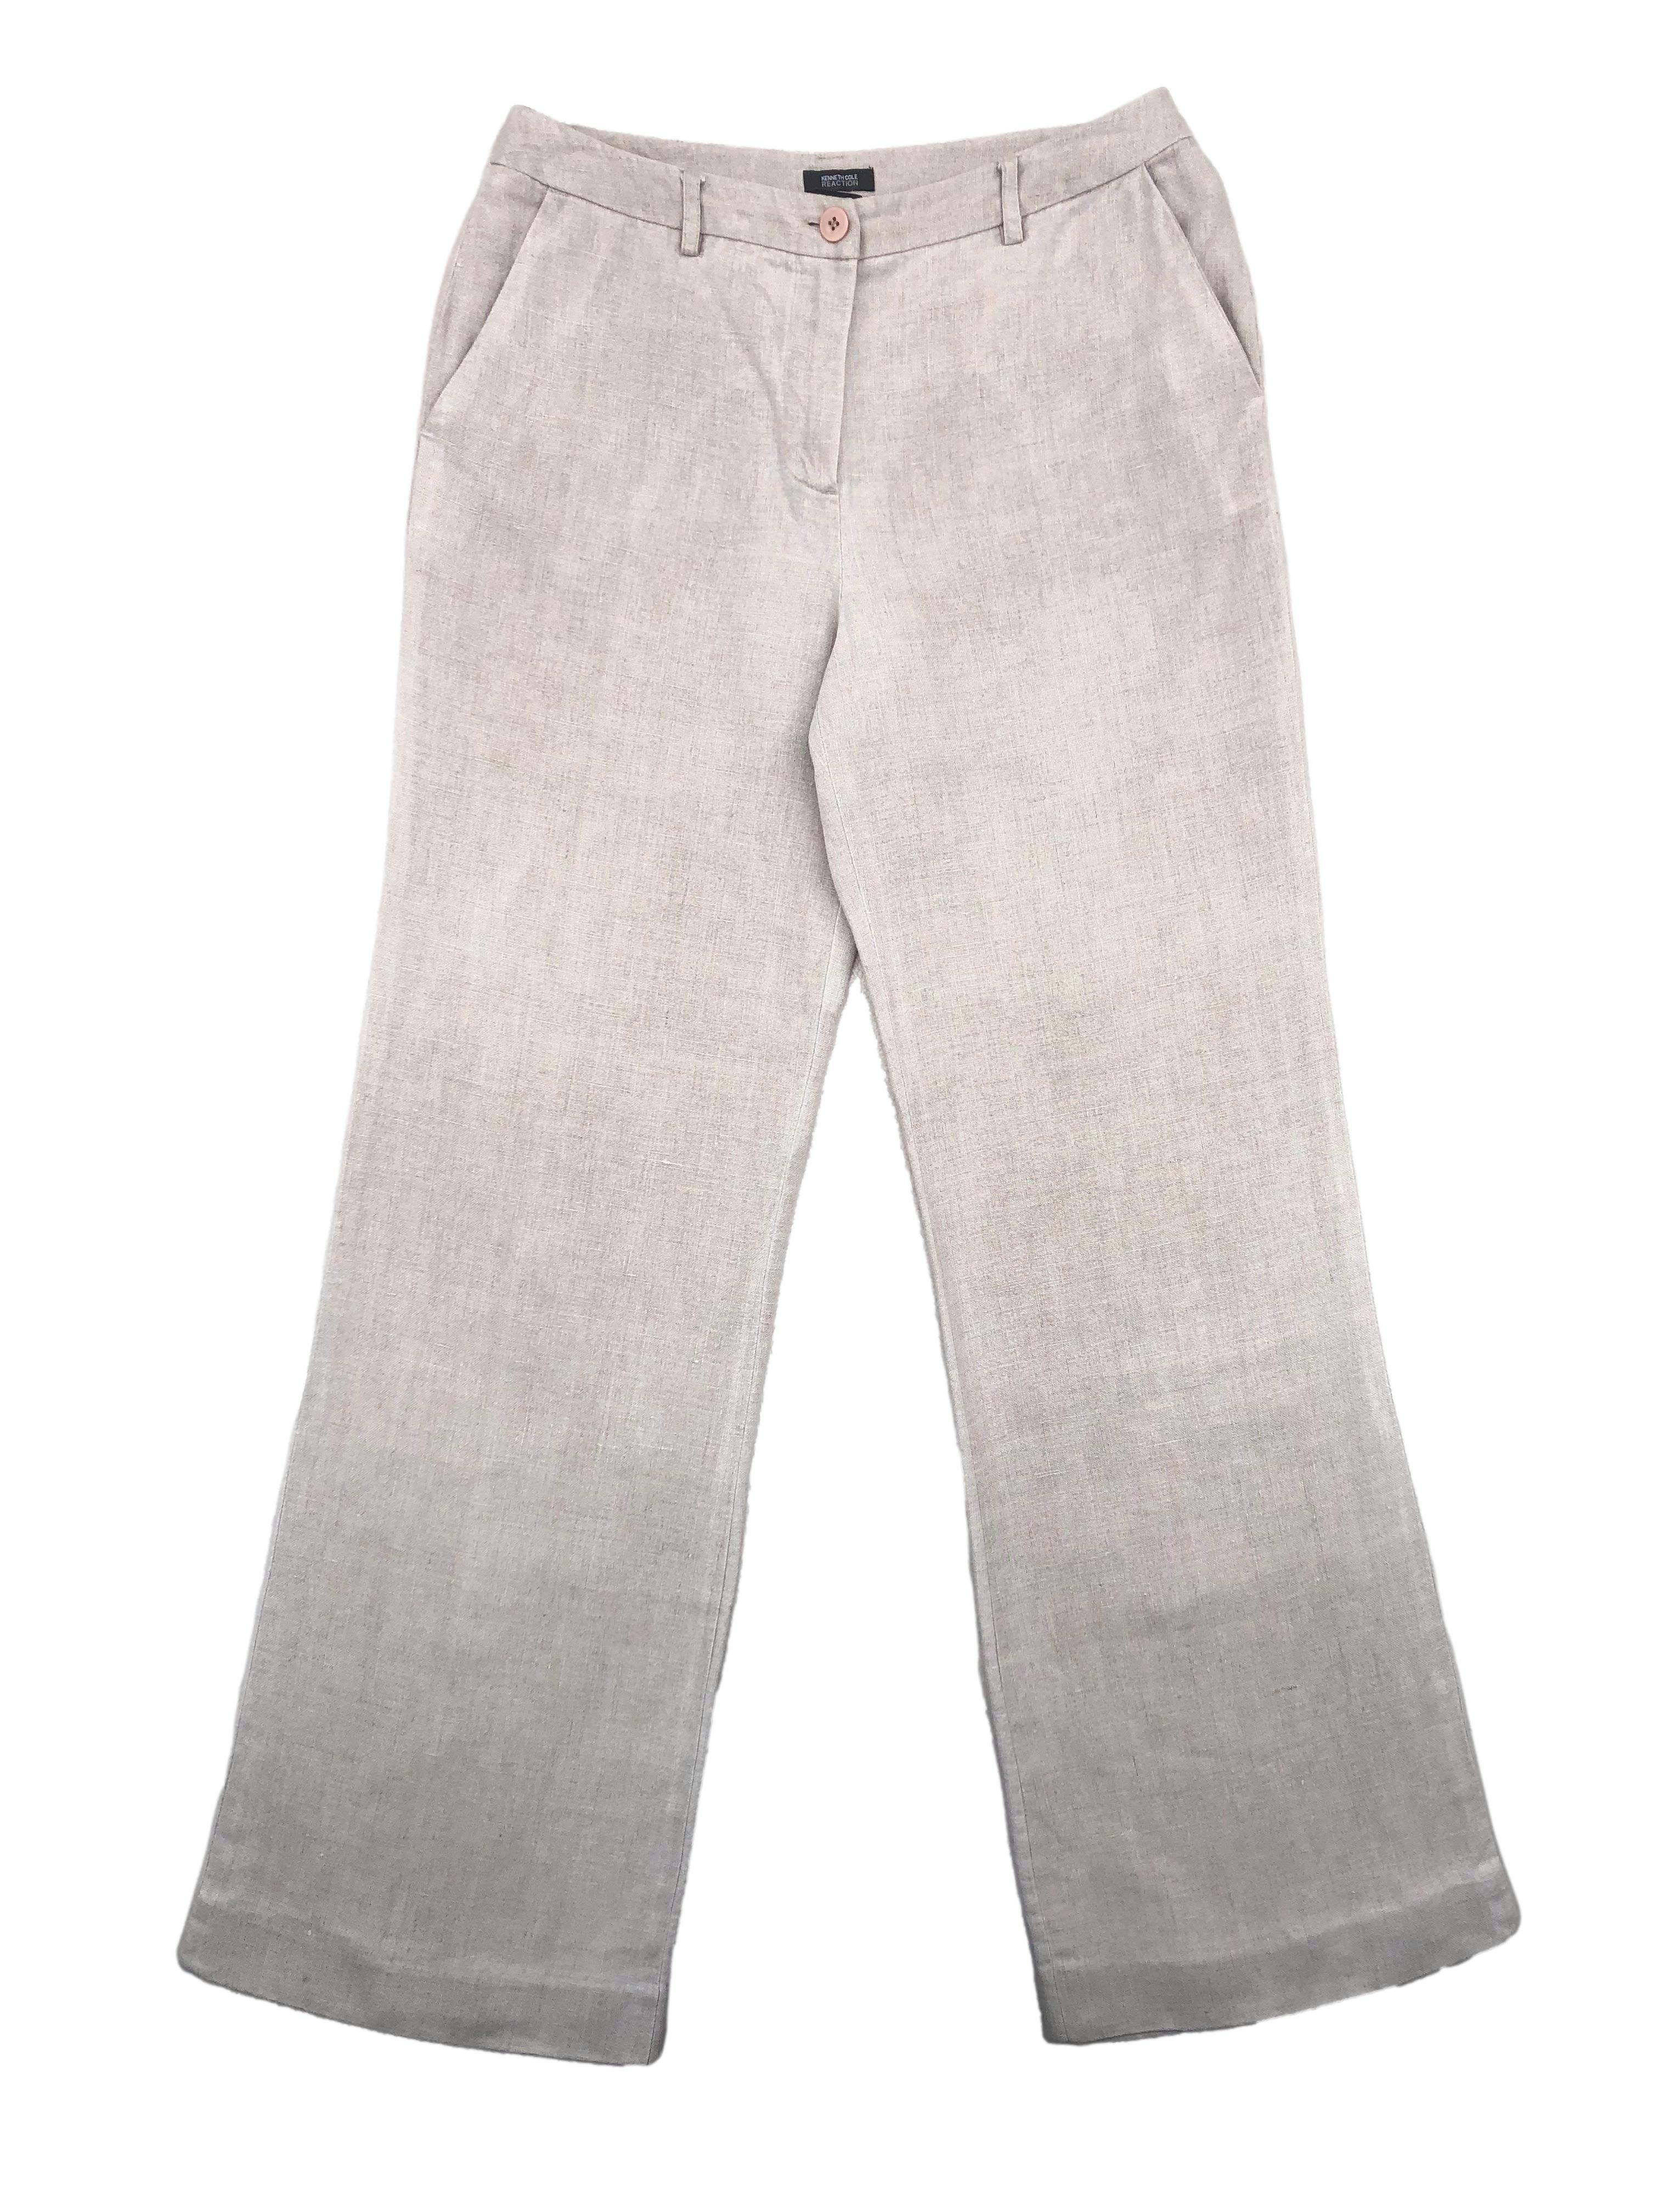 Pantalón Kenneth Cole recto de tiro alto , tela 100% lino con bolsillos laterales. Cintura 78 cm, Largo 106 cm.